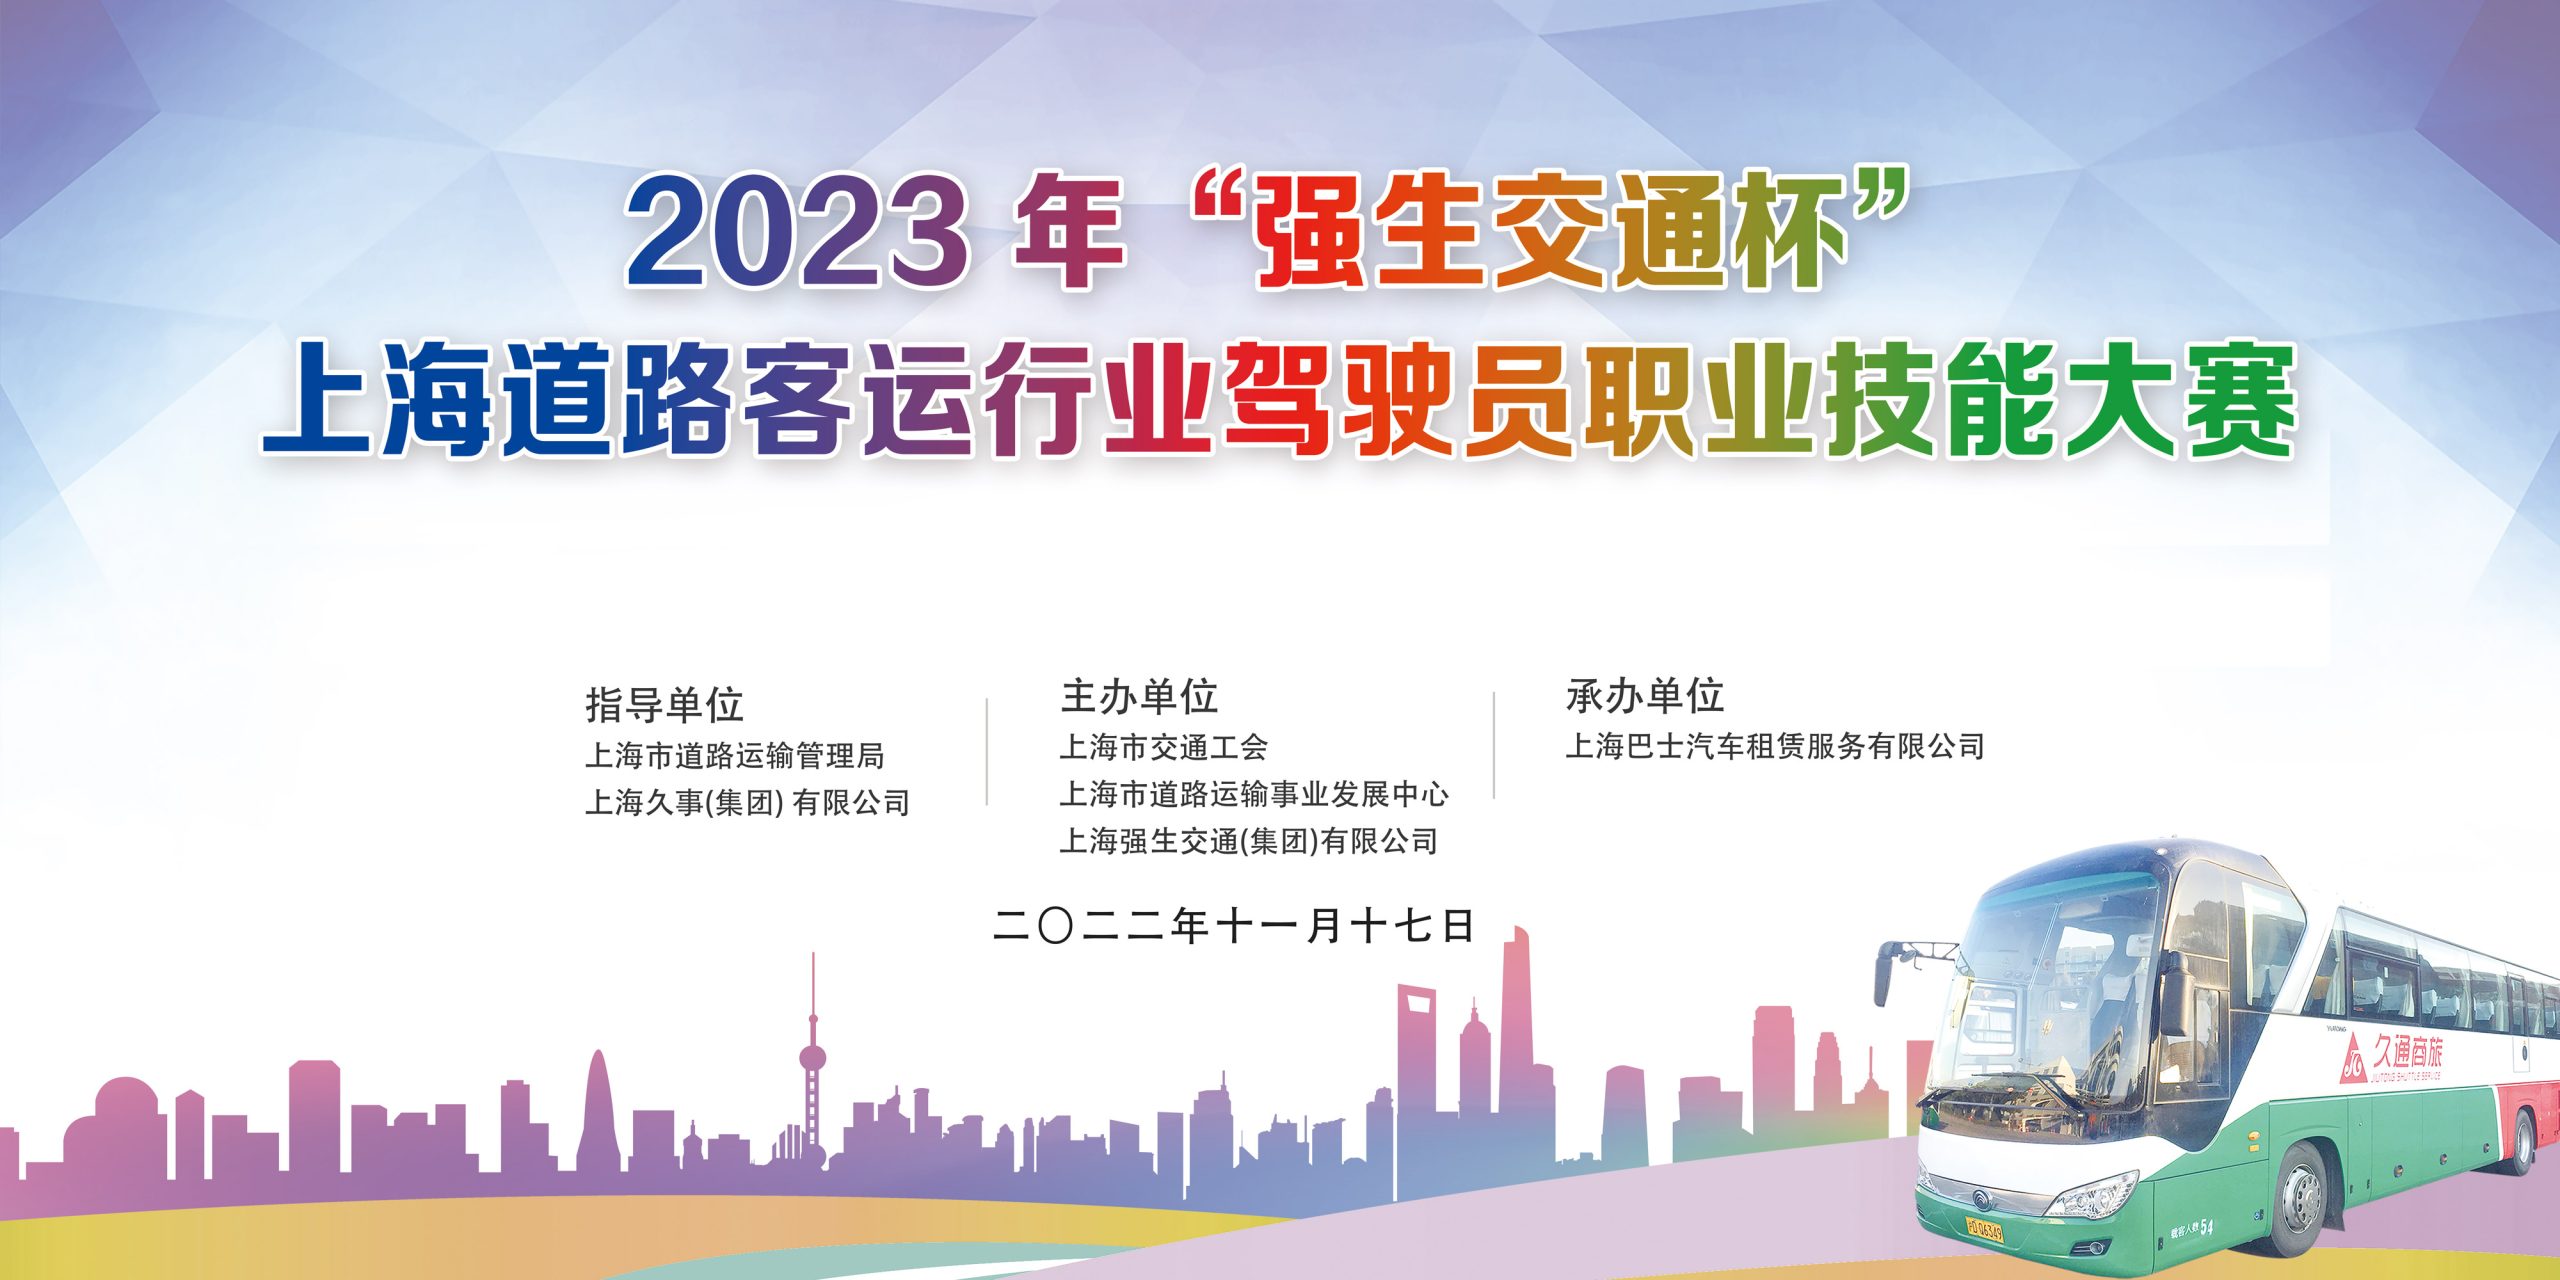 2023 年“强生交通杯”上海道路客运行业驾驶员职业技能大赛 案例展示 第1张